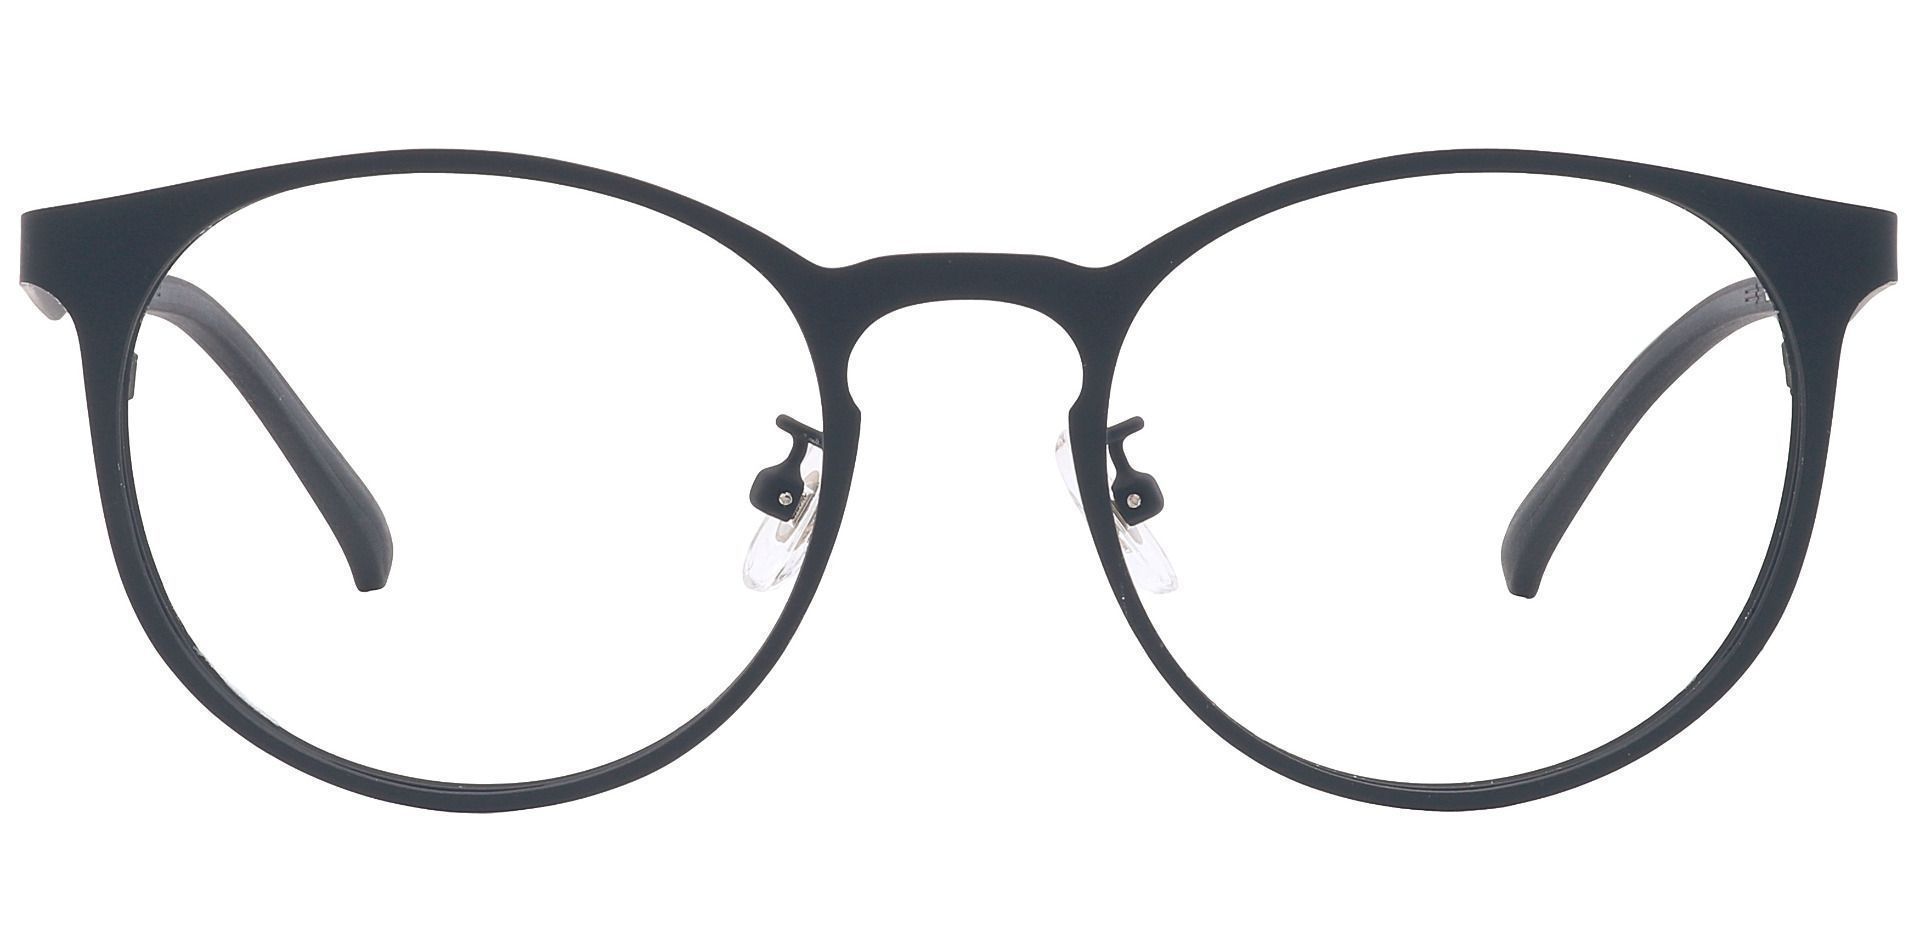 Wallace Oval Progressive Glasses - Black